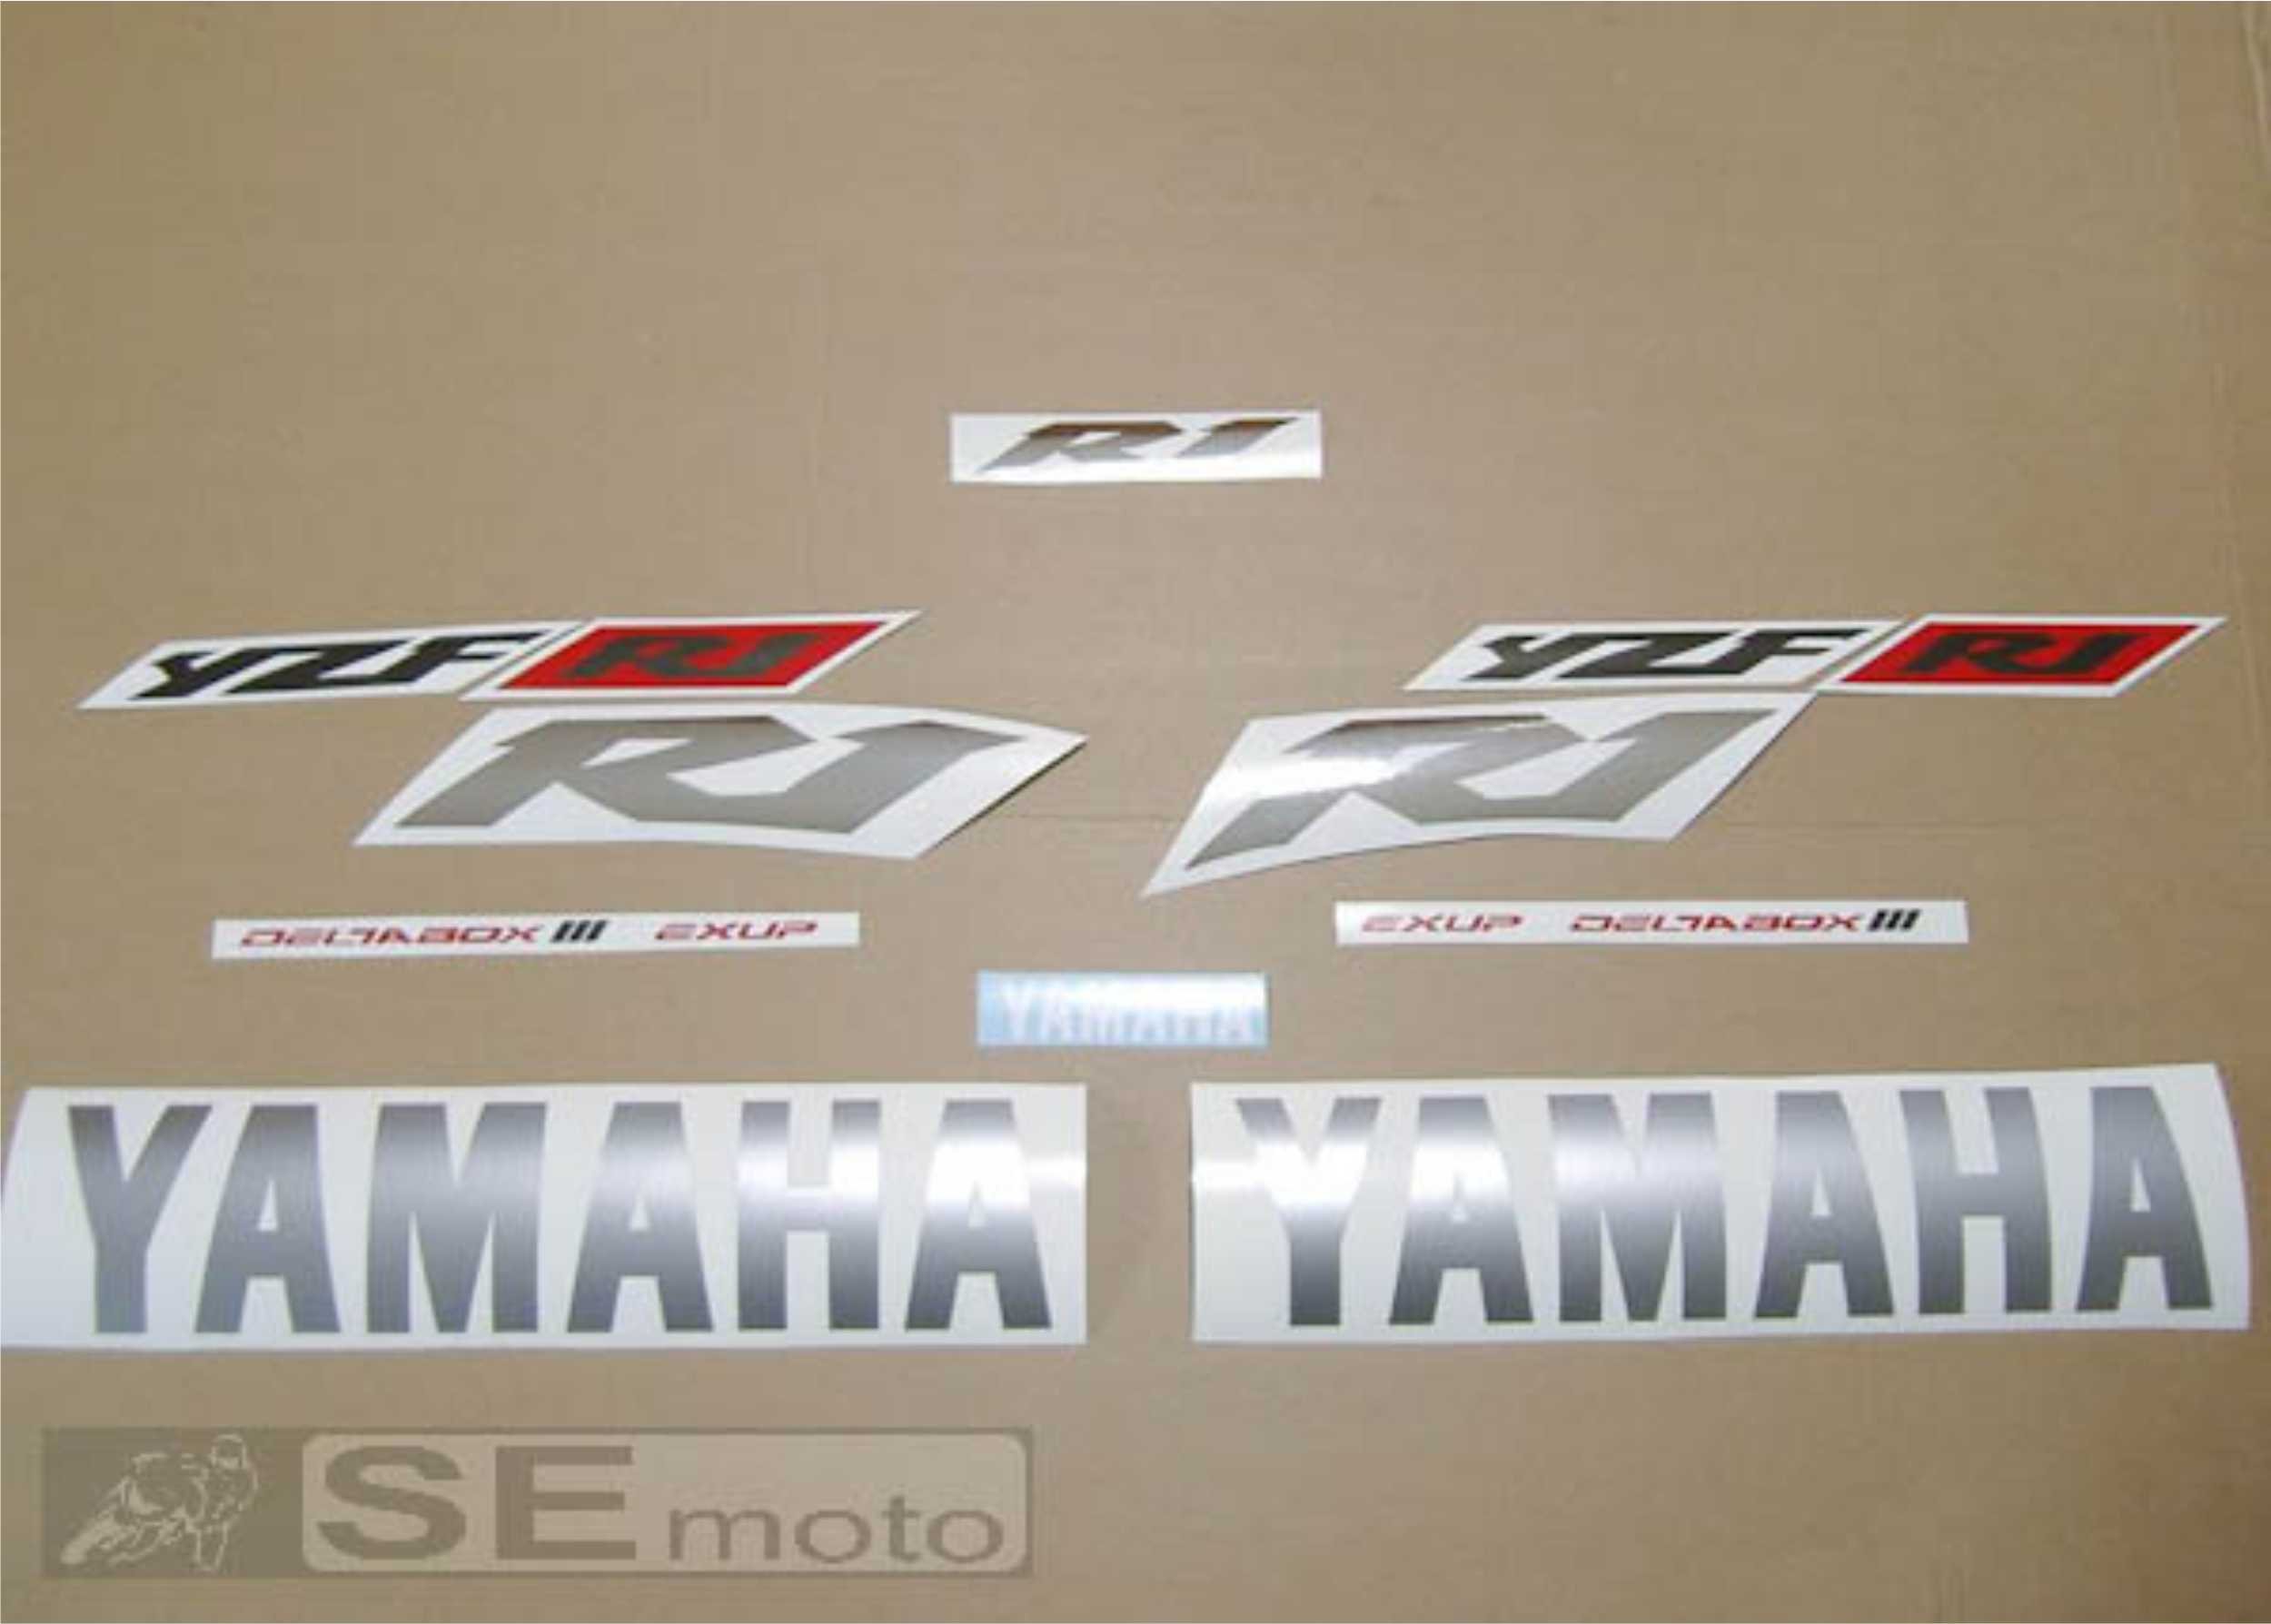 Yamaha YZF-R1 2002 красно-бело-черный- фото2